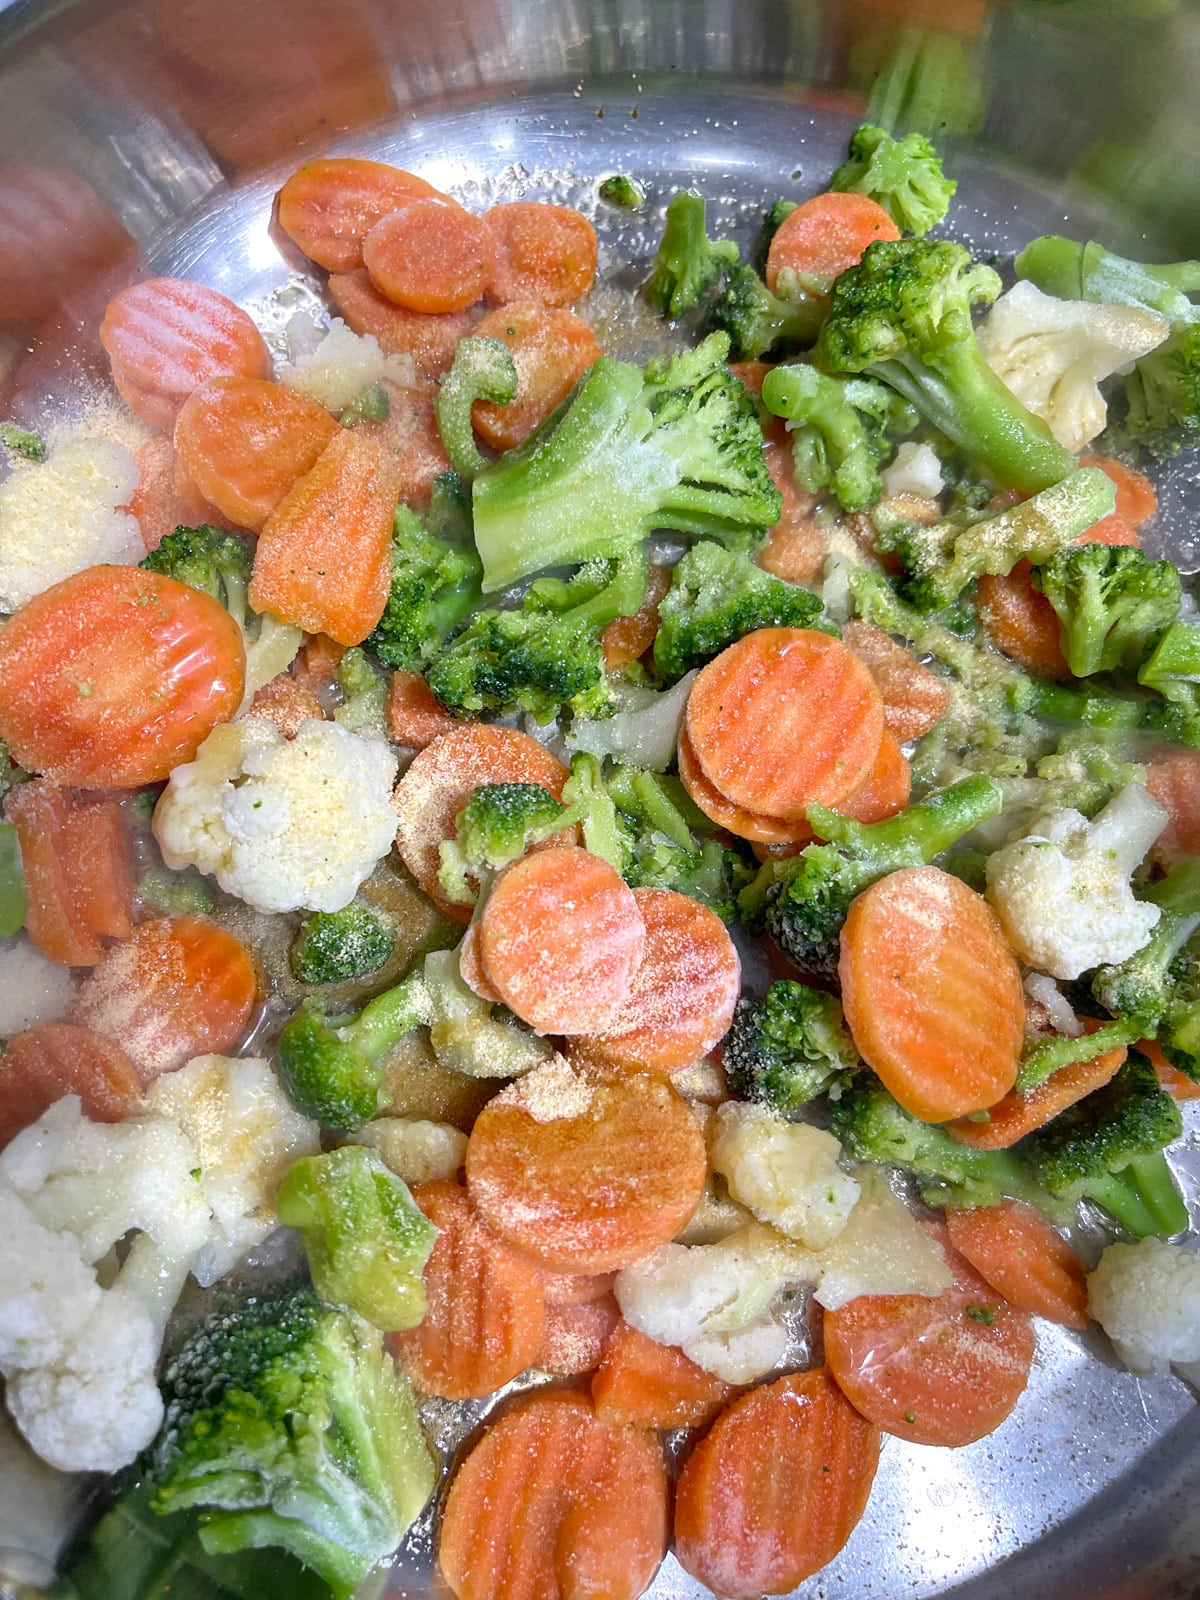 cooking frozen vegetables